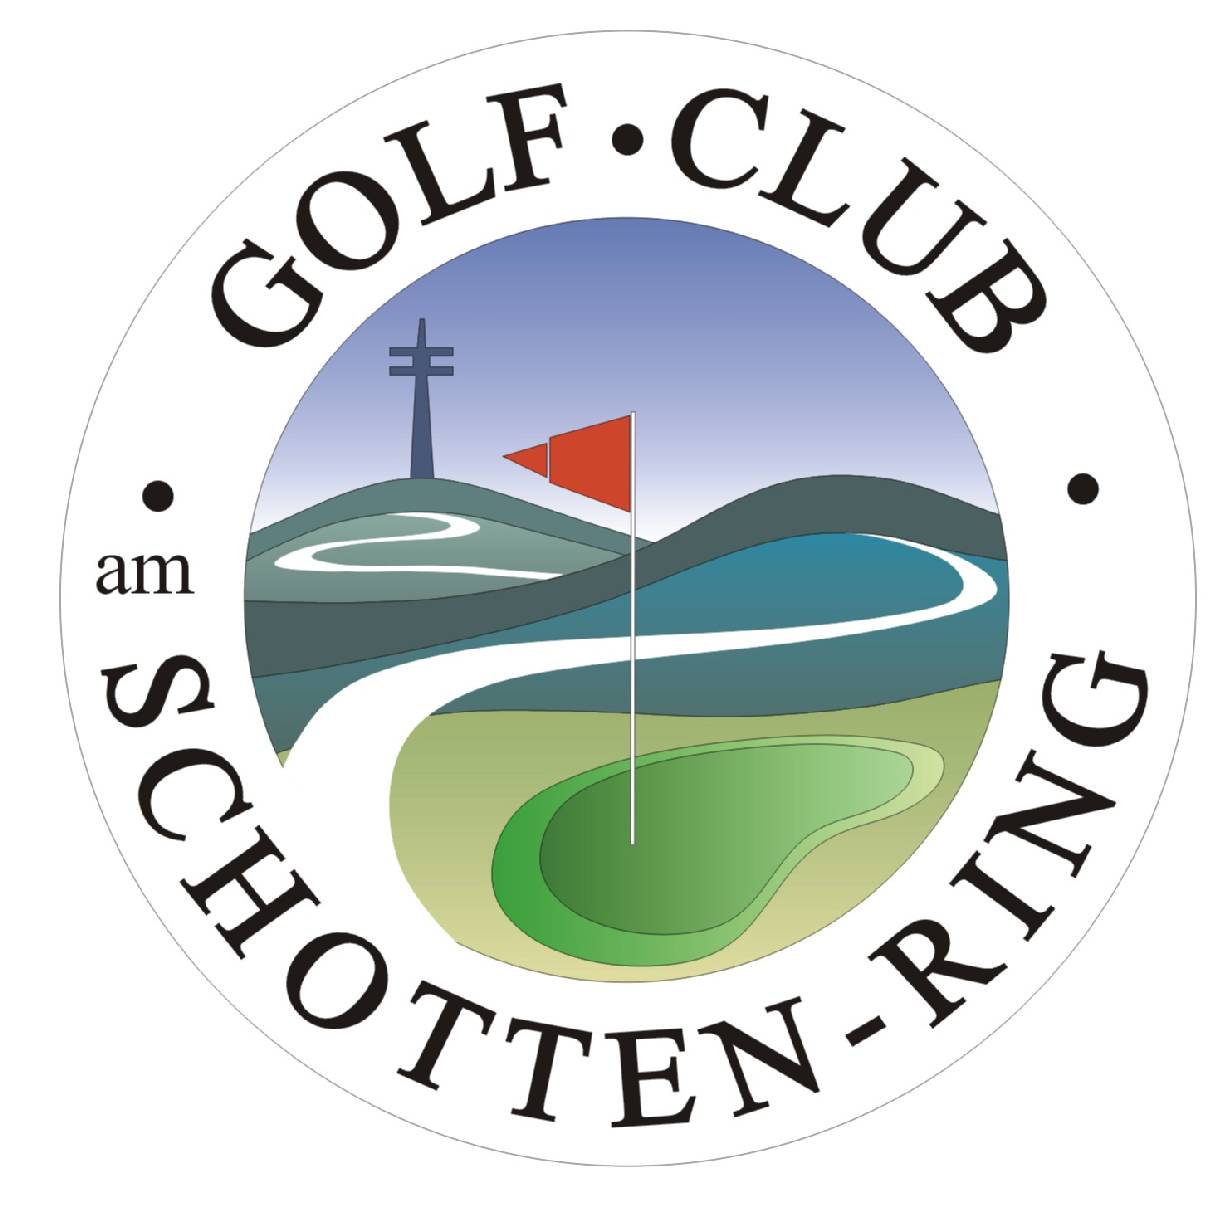 Golf Shop Frankfurt, Frankfurt Golf, Frankfurt Golf Shop, Frankfurt Golf Reparatur, Golf Mitgliedschaft, günstig Golfen in Frankfurt, Golfclub am Schotten-Ring